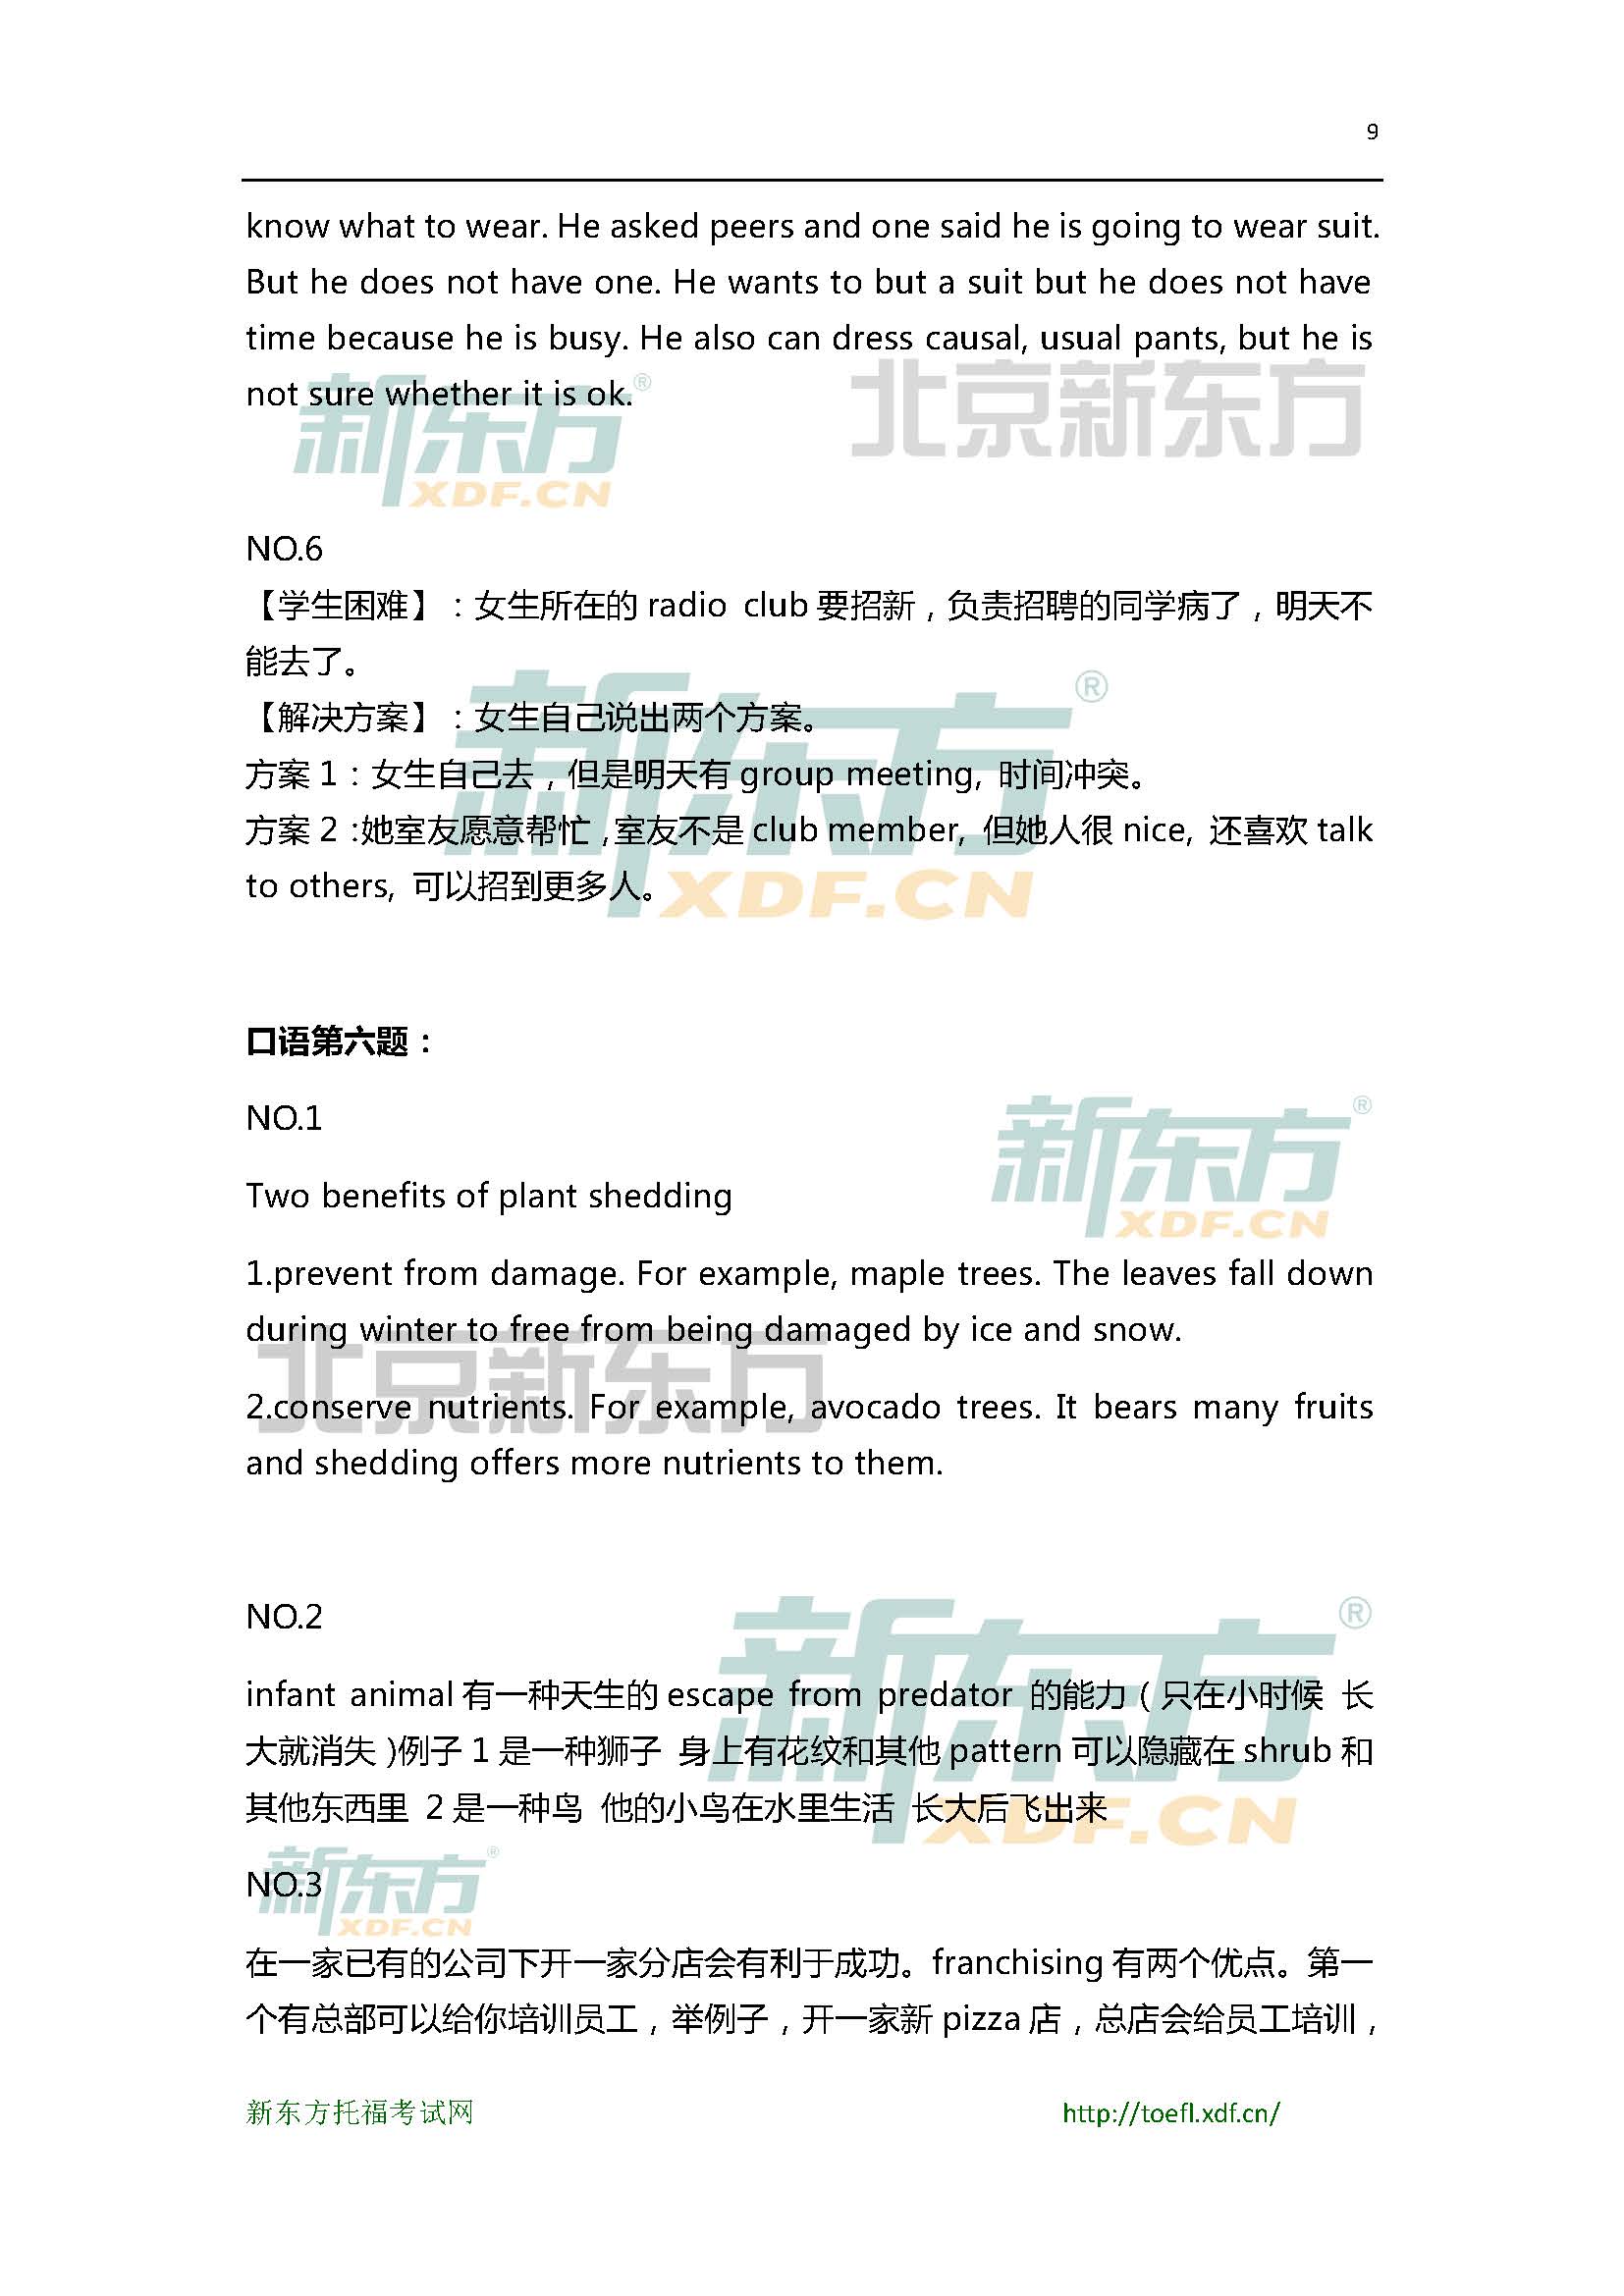 2015年6月27日托福口语超级小范围预测(6套题)